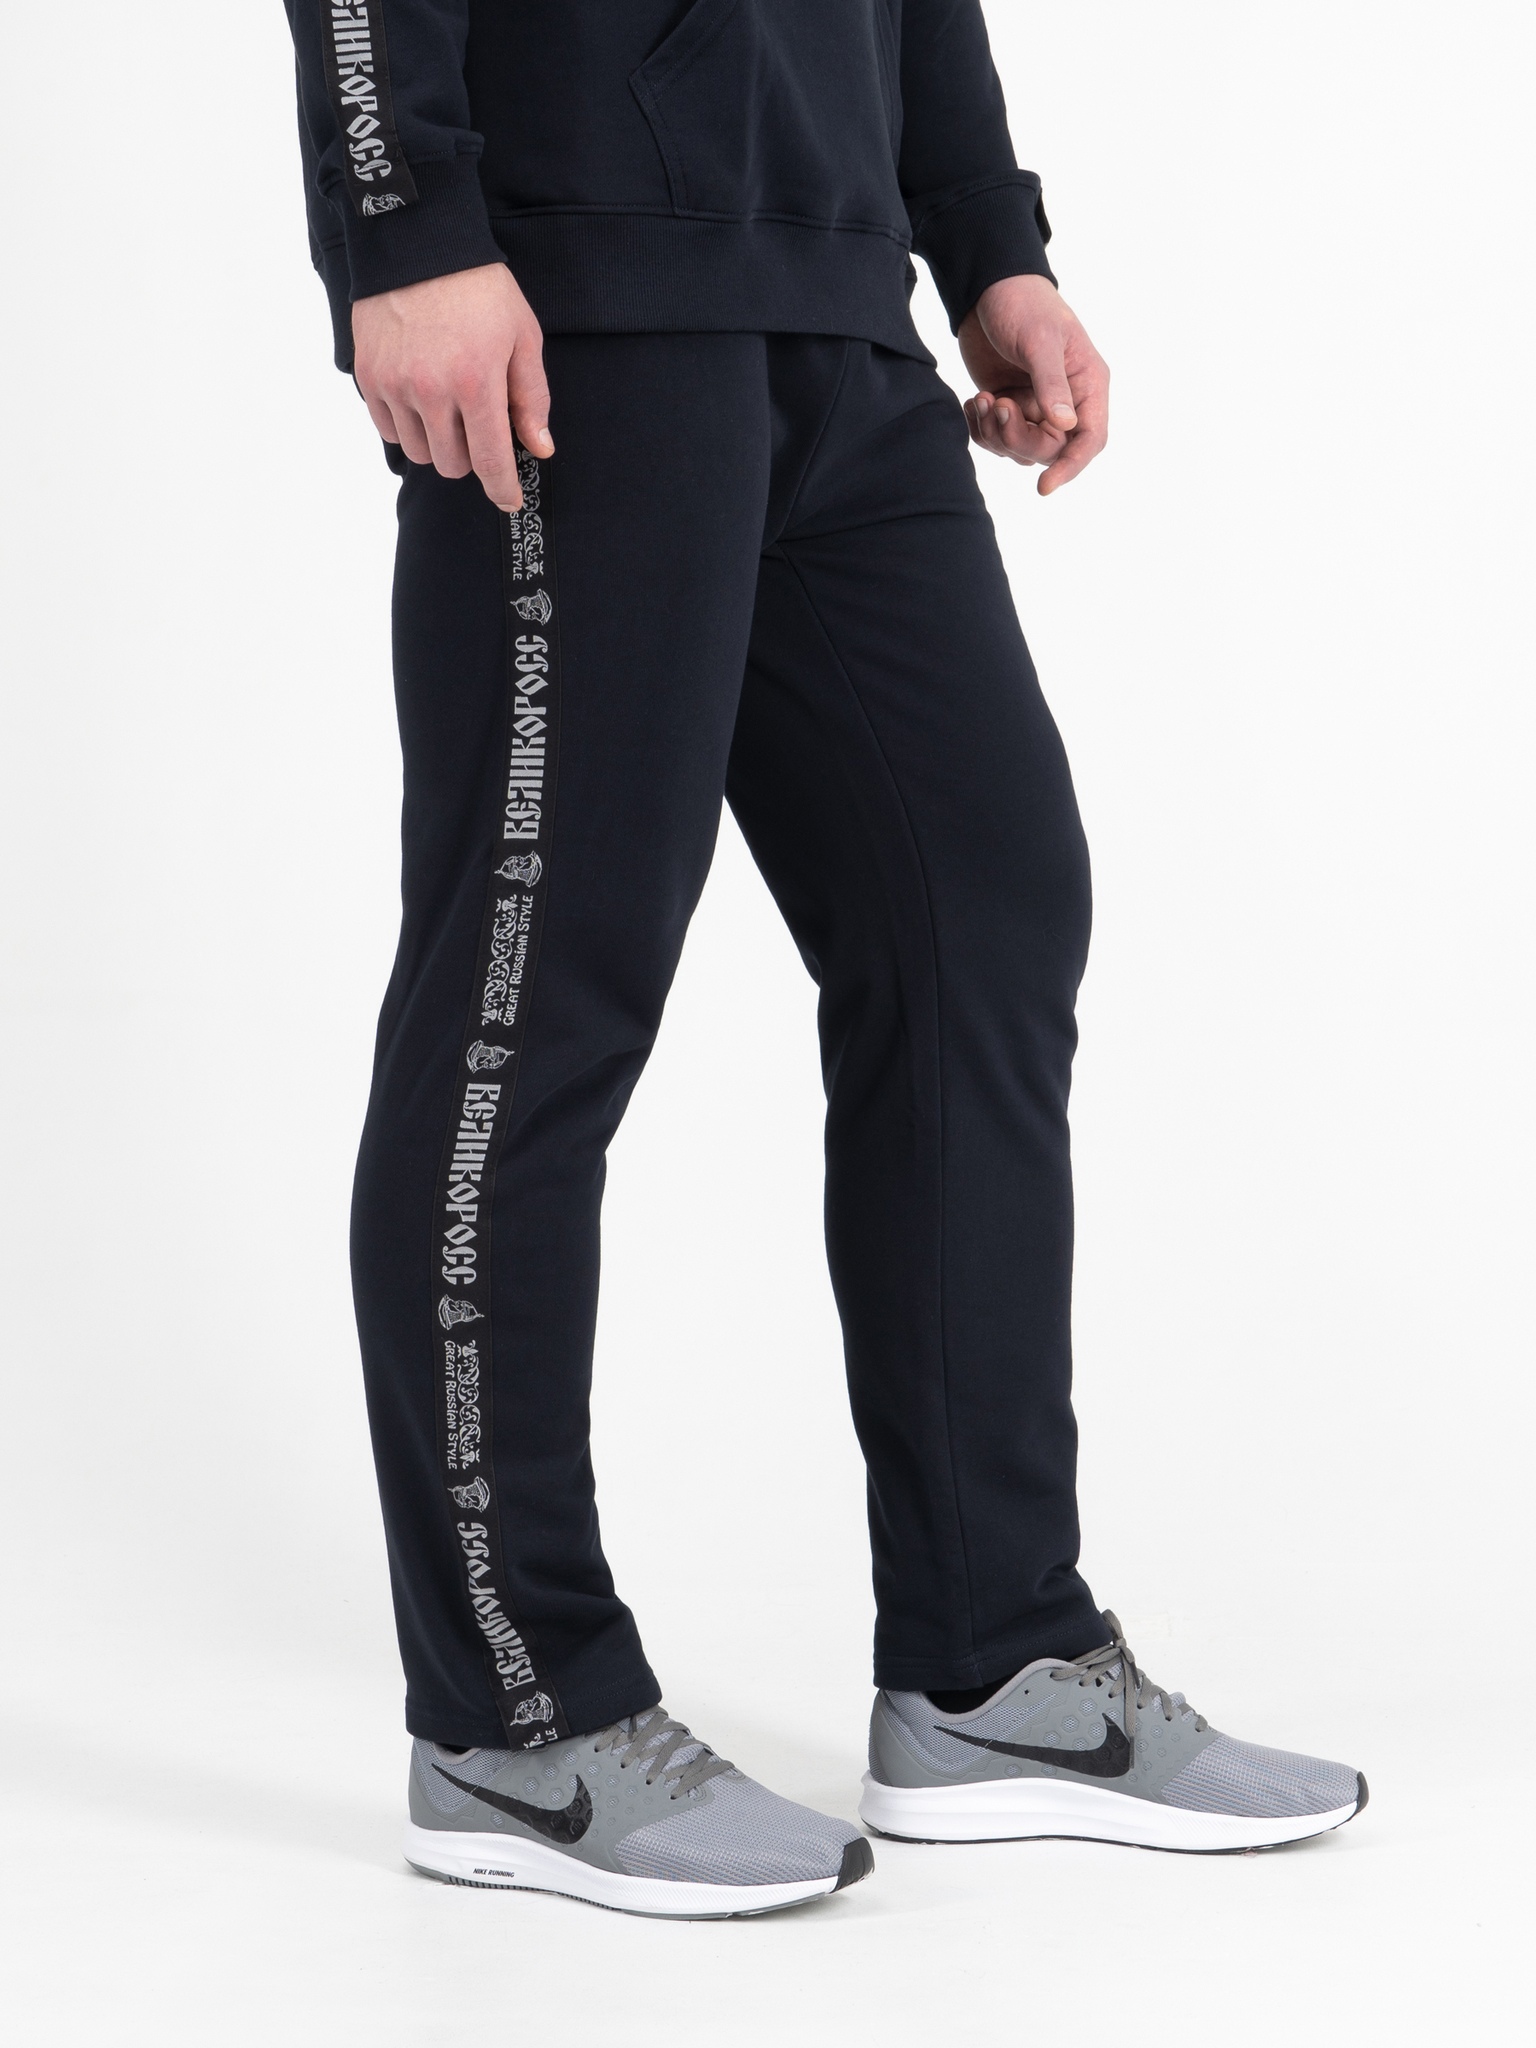 фото Спортивные брюки мужские великоросс bm синие 62 ru